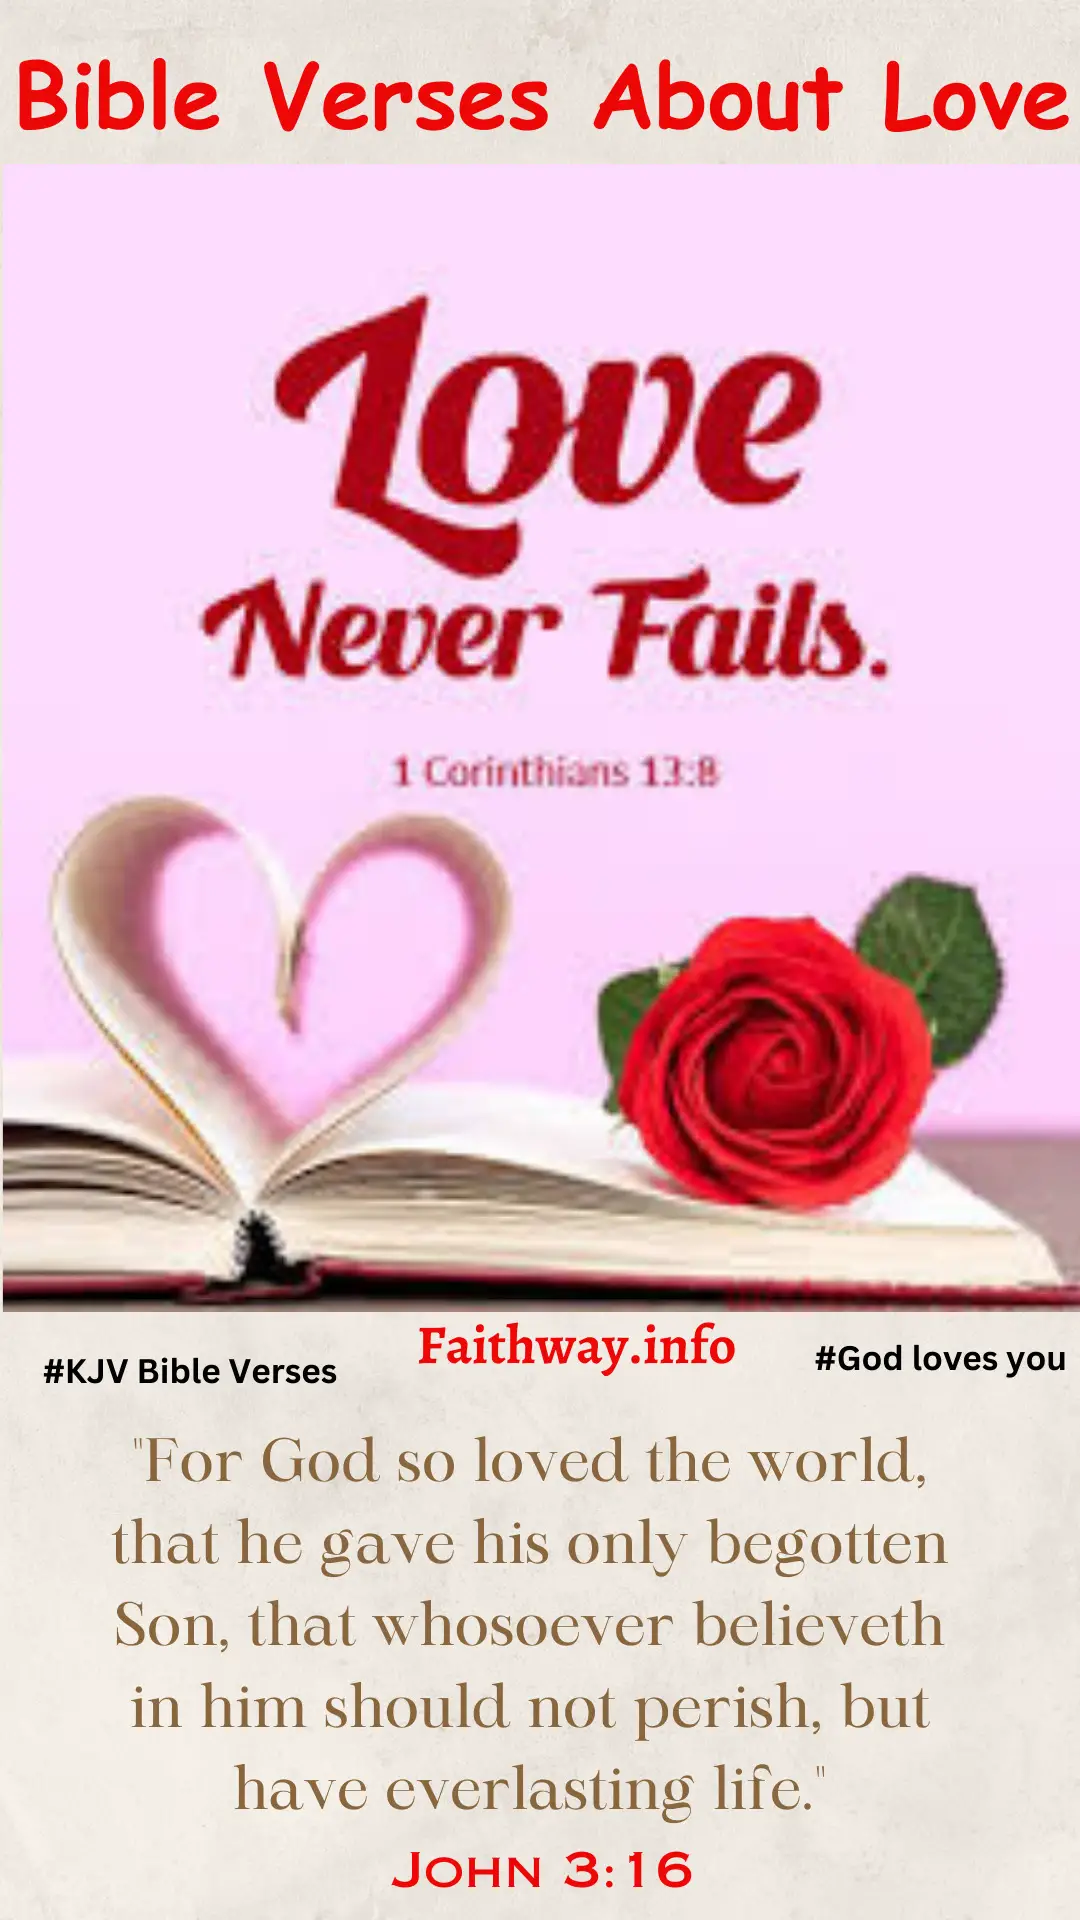 50 Versículos Bíblicos Kjv Sobre El Amor Y El Matrimonio: Los Mejores Versículos Bíblicos -